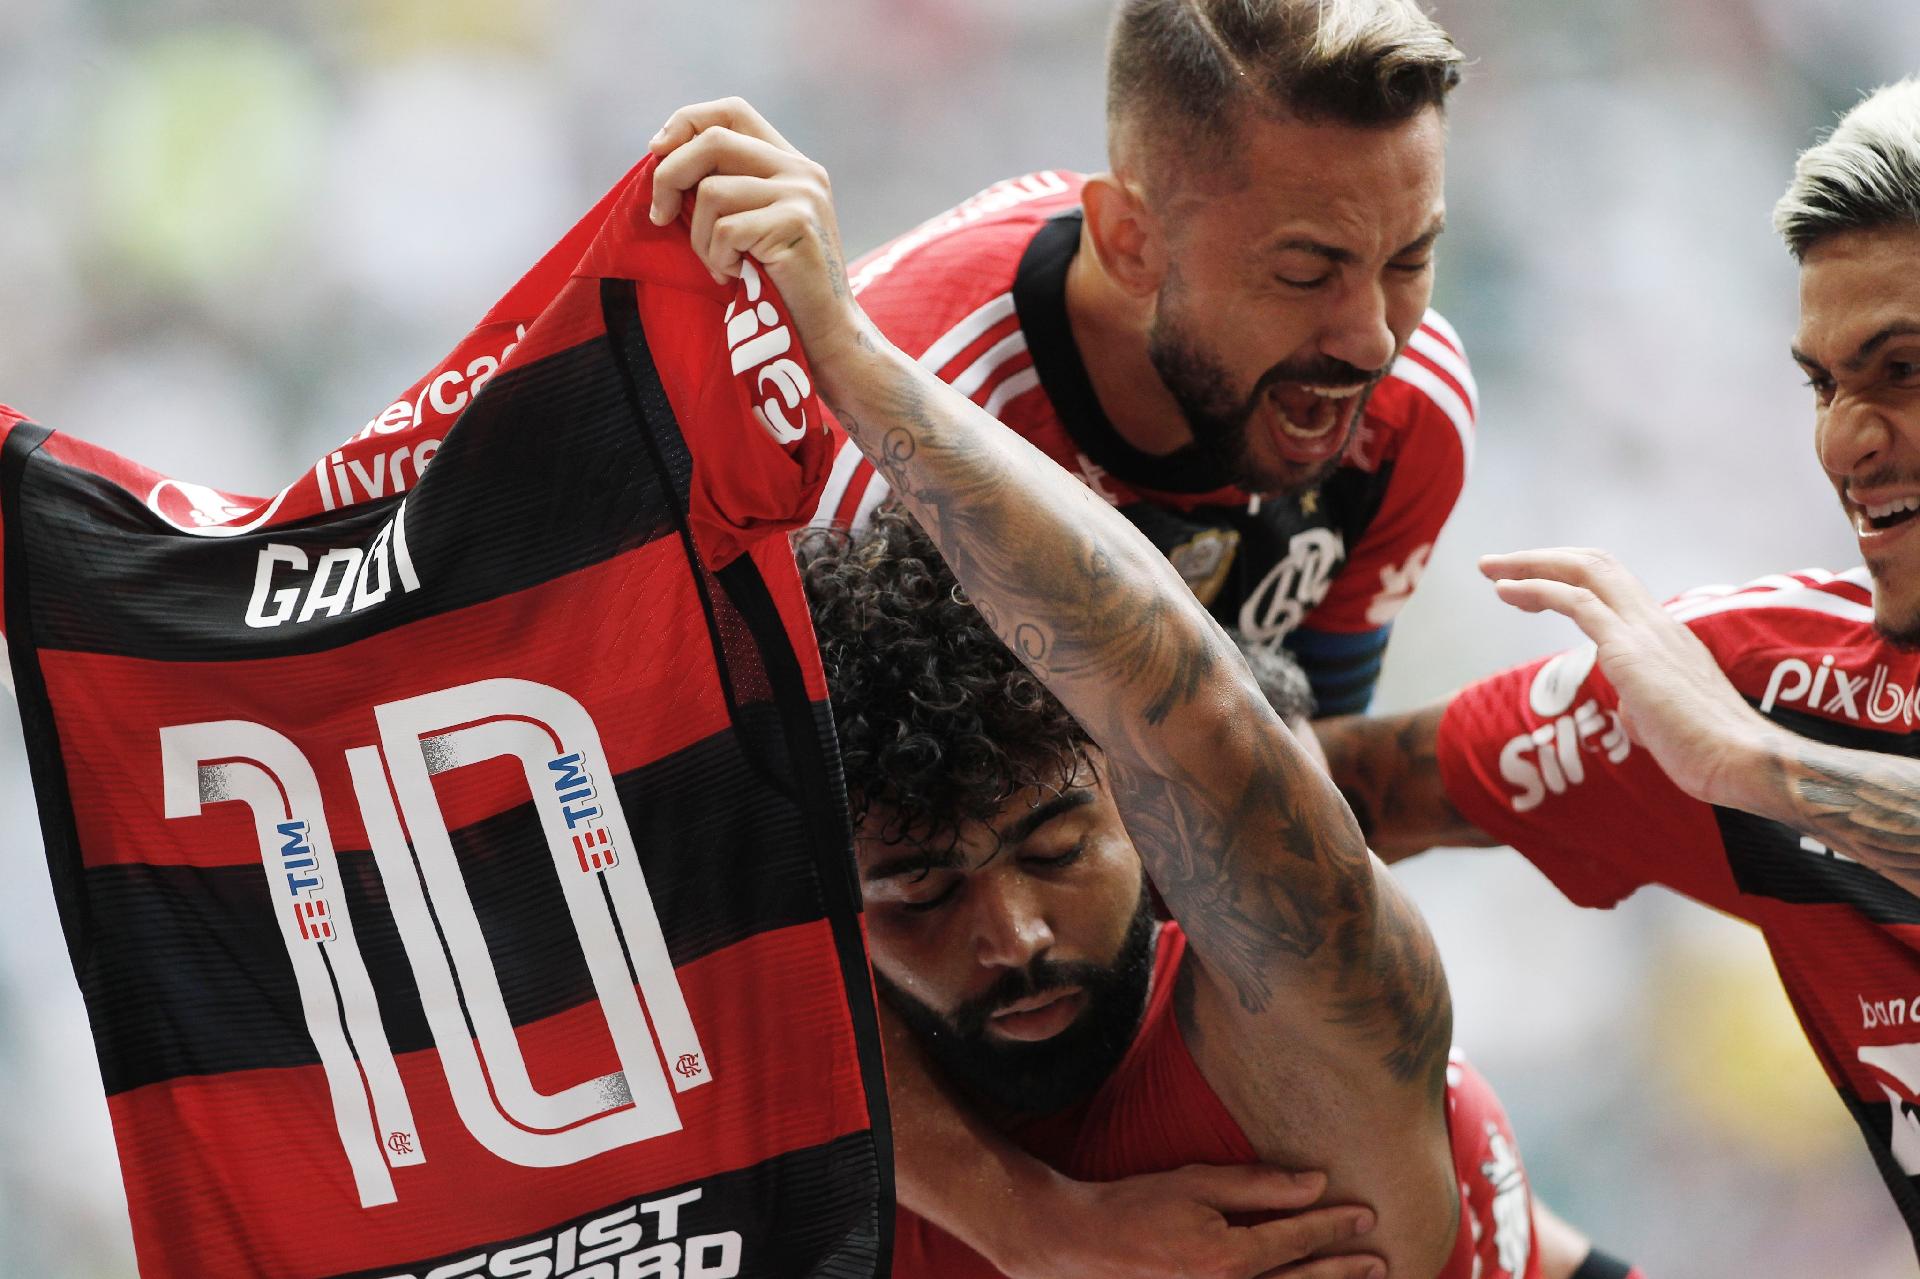 Guia do Mundial de Clubes: muito mais do que um possível Flamengo